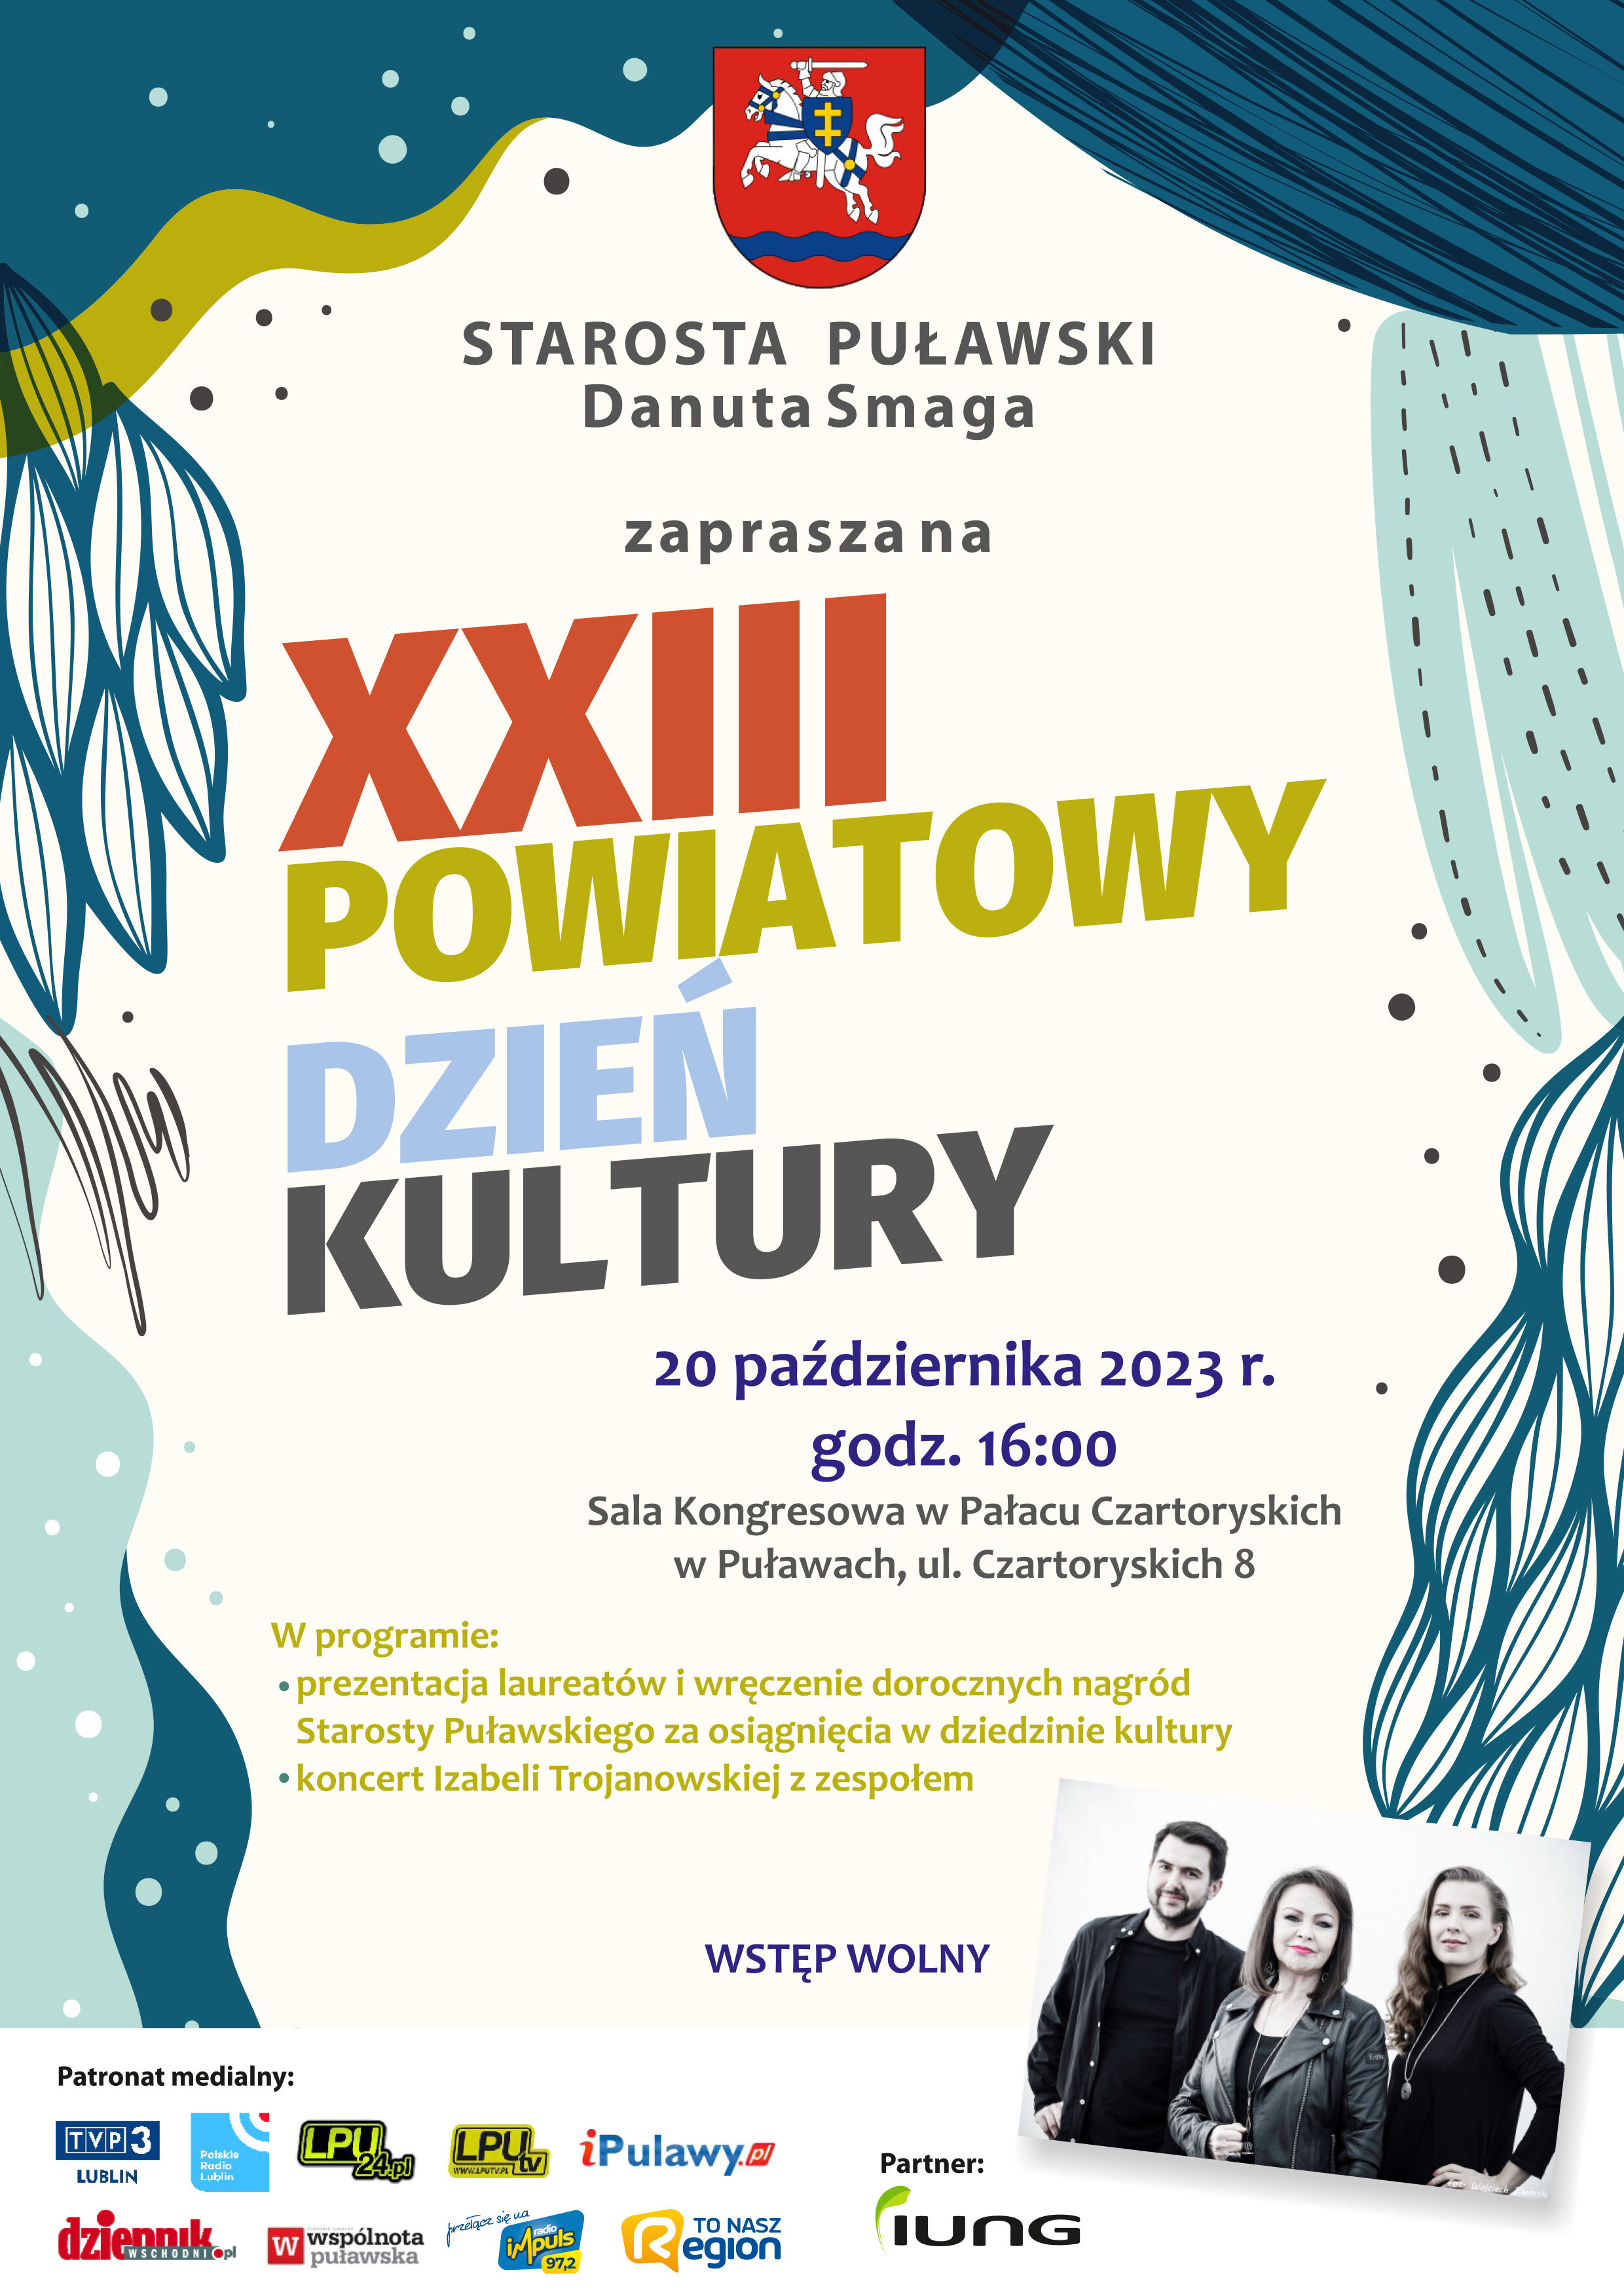 XXIII Powiatowy Dzień Kultury 20 października 2023 roku Sala Kongresowa Pałacu Czartoryskich w Puławach